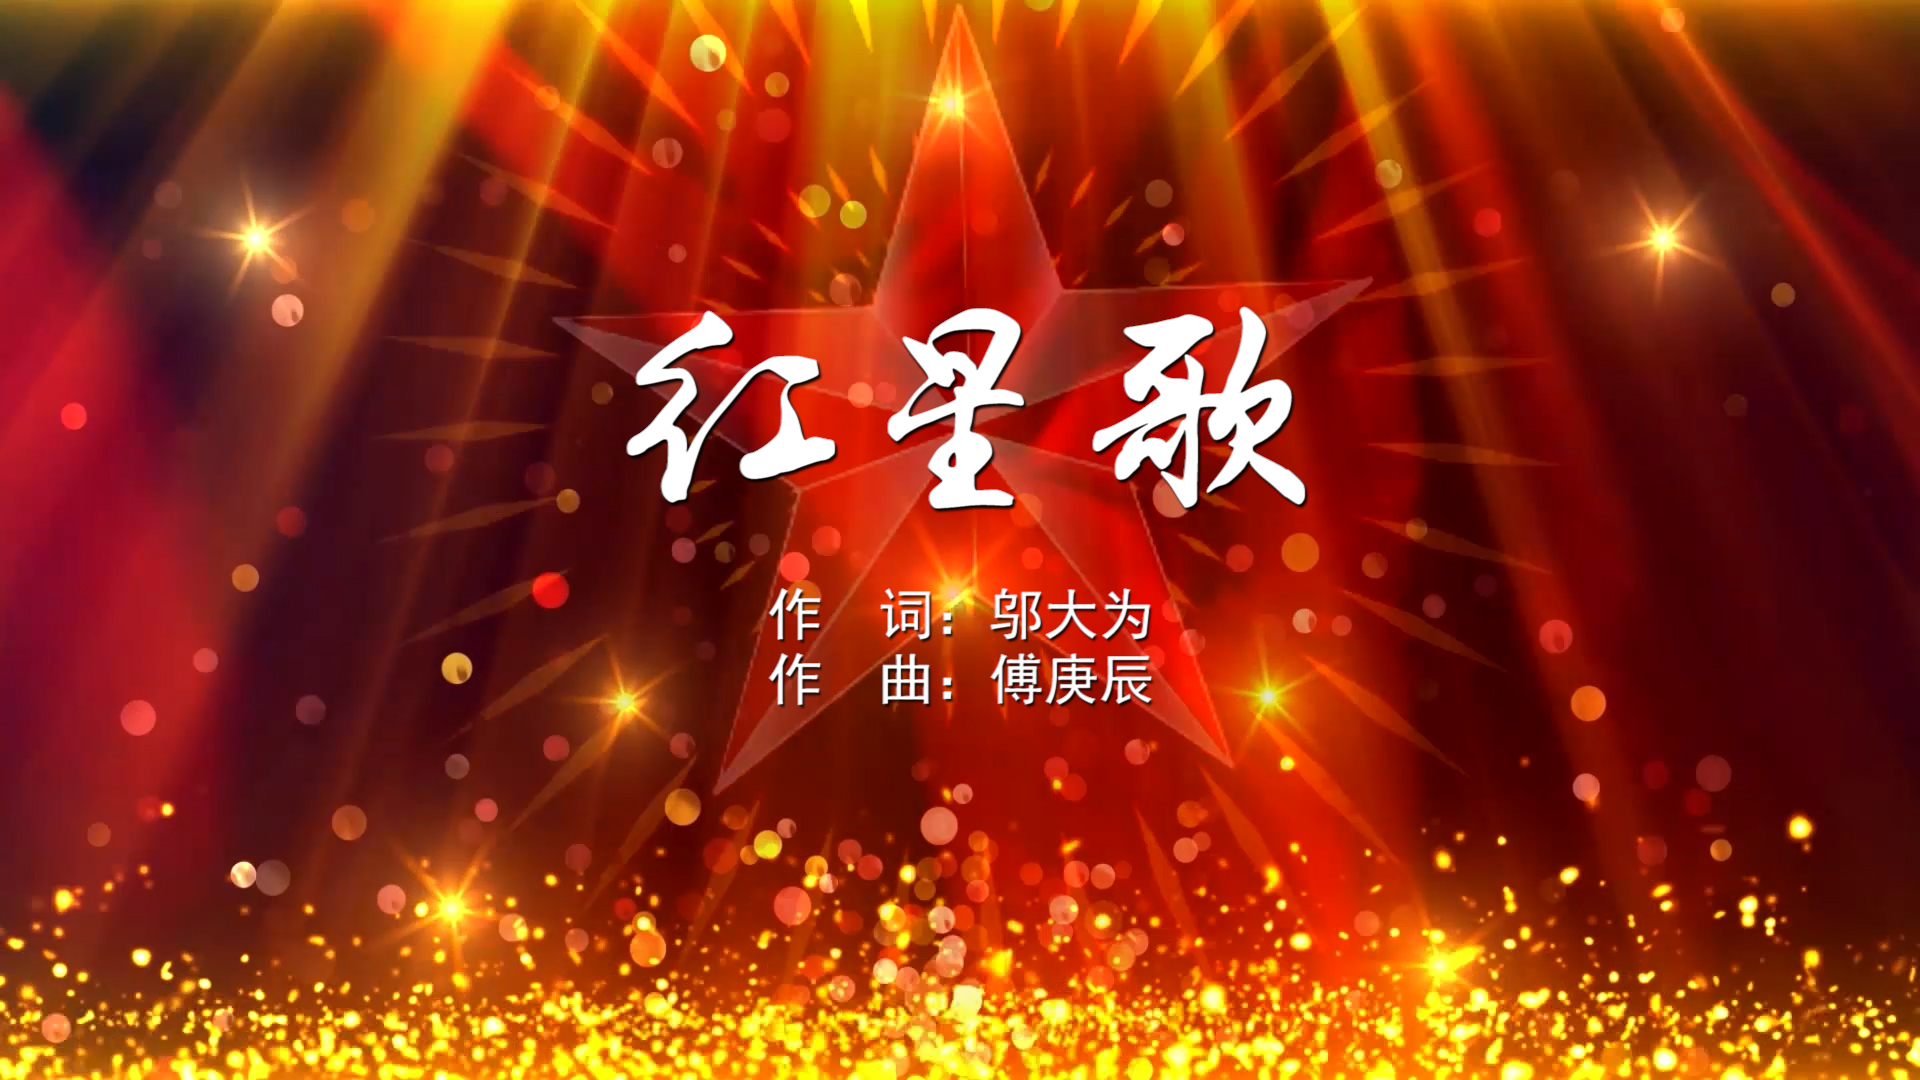 红星歌 北京少年宫合唱团 MV字幕配乐伴奏舞台演出LED背景大屏幕视频素材TV